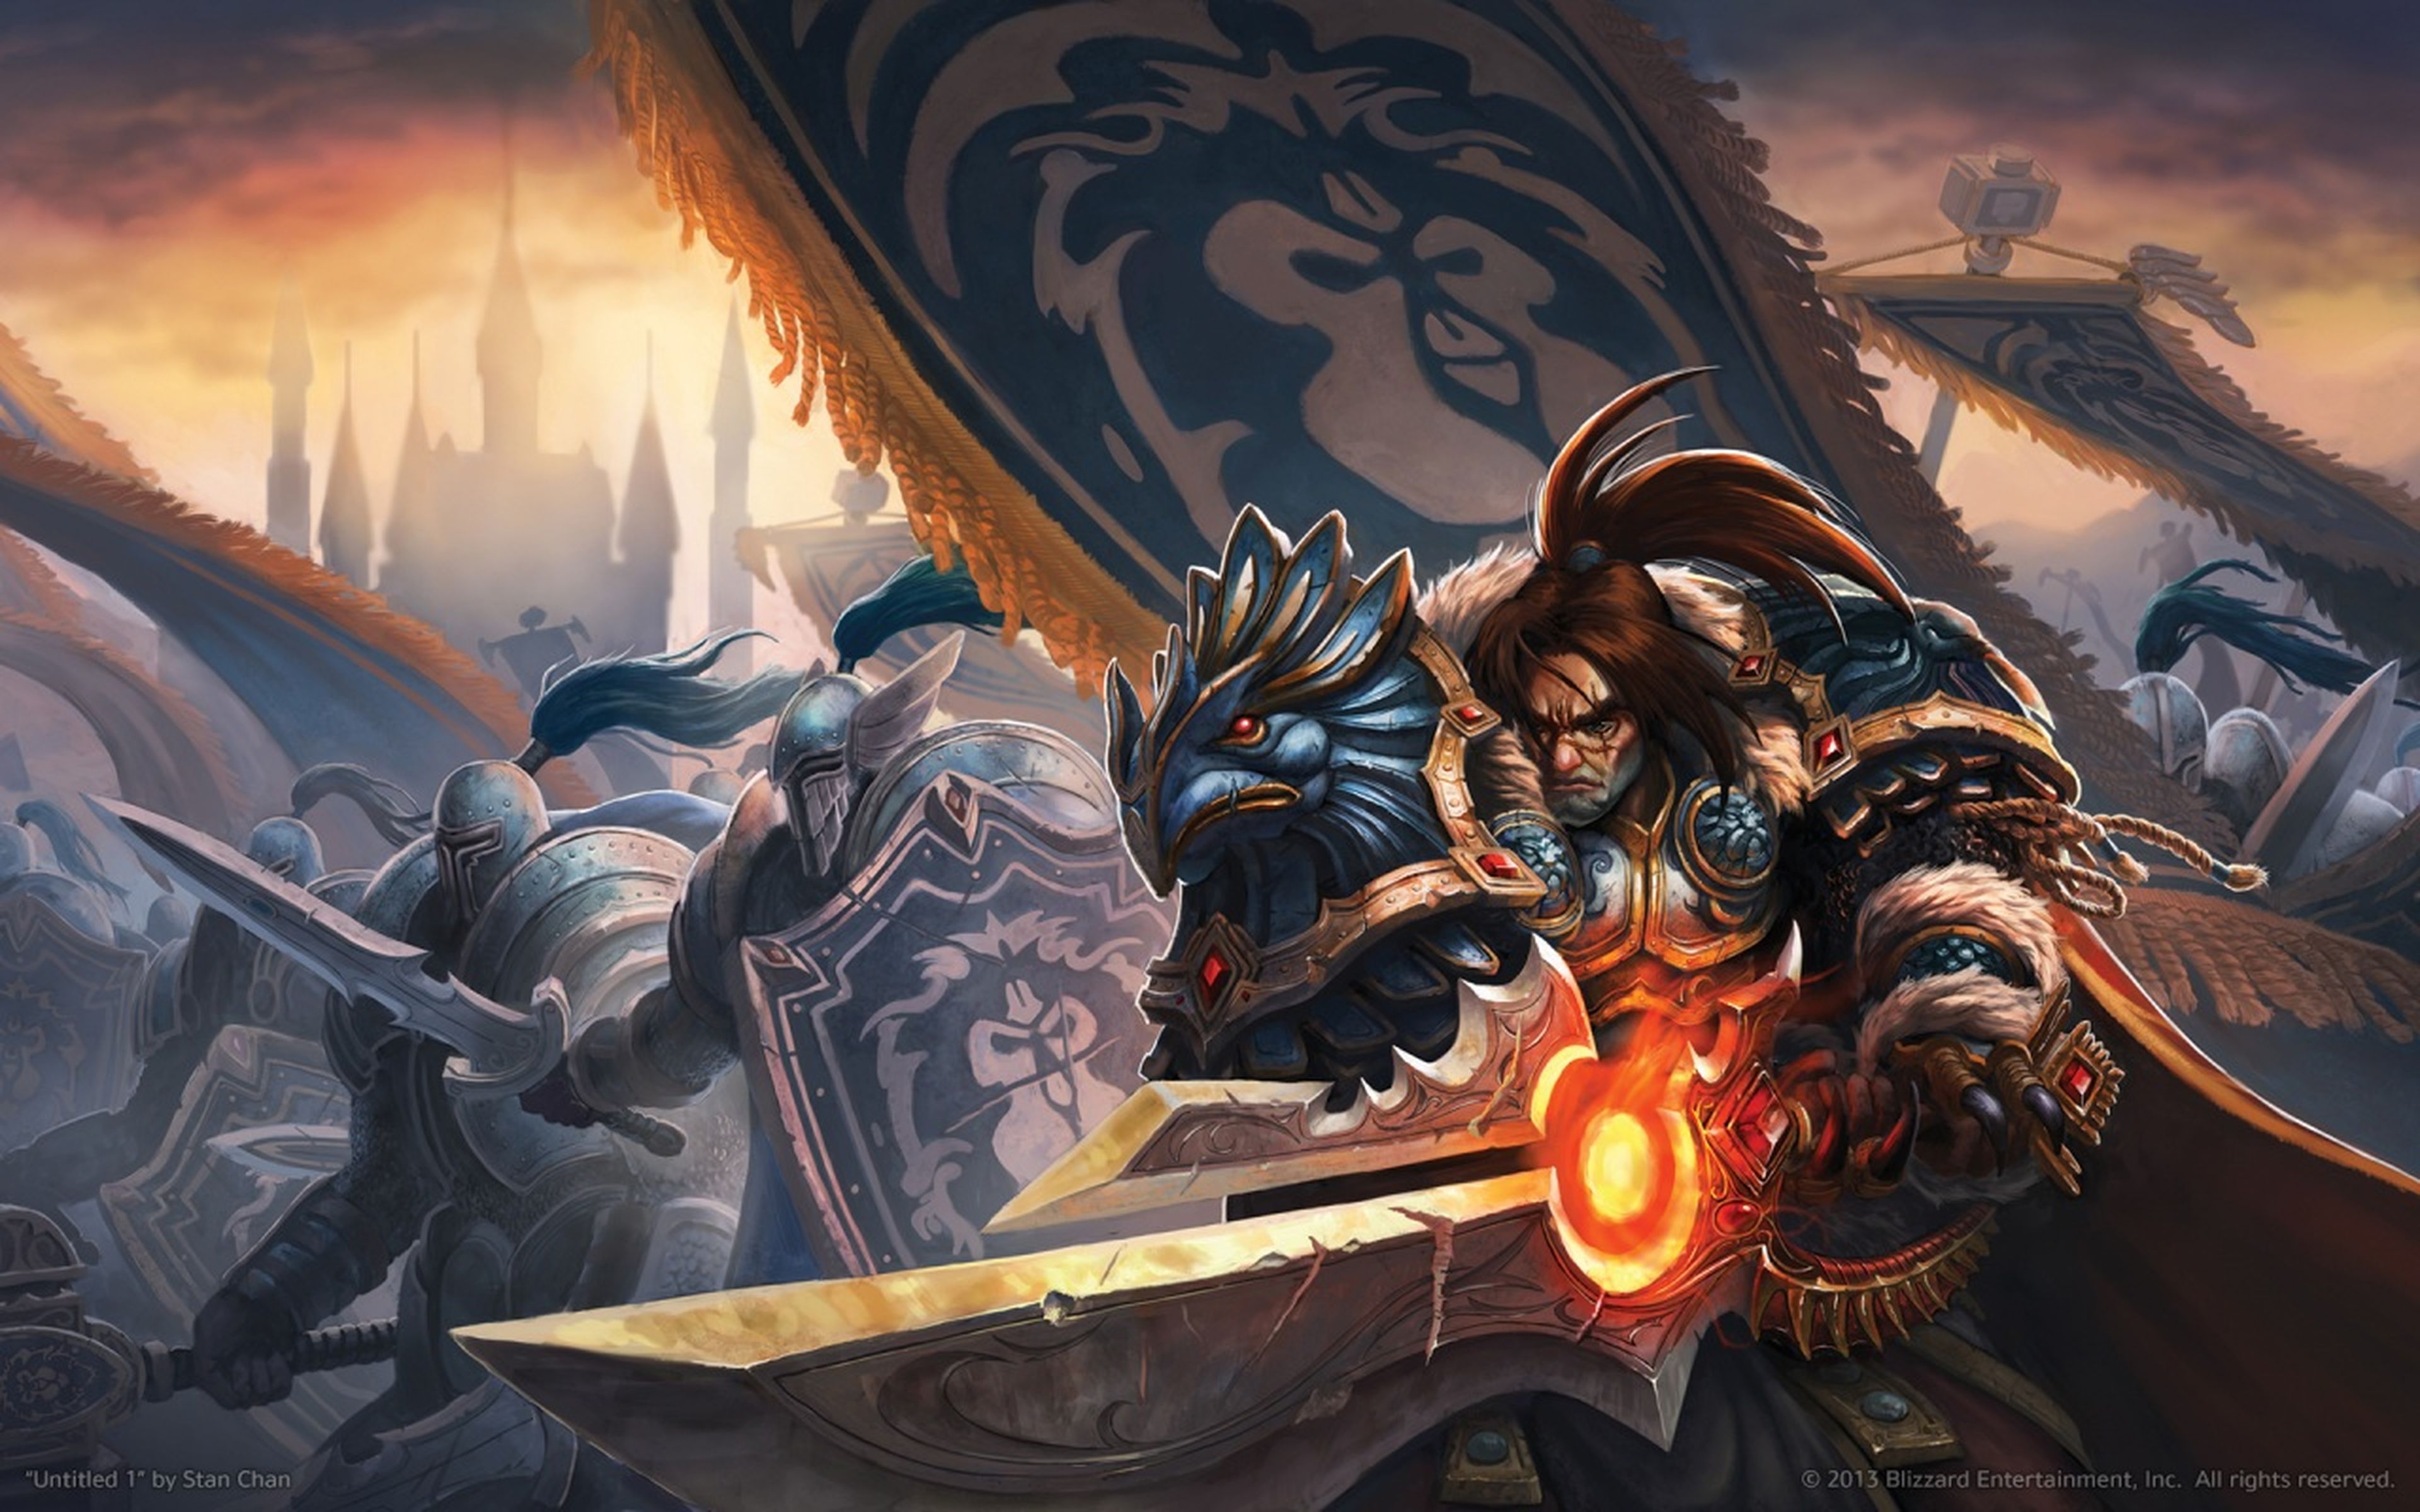 Warcraft: las claves de la película